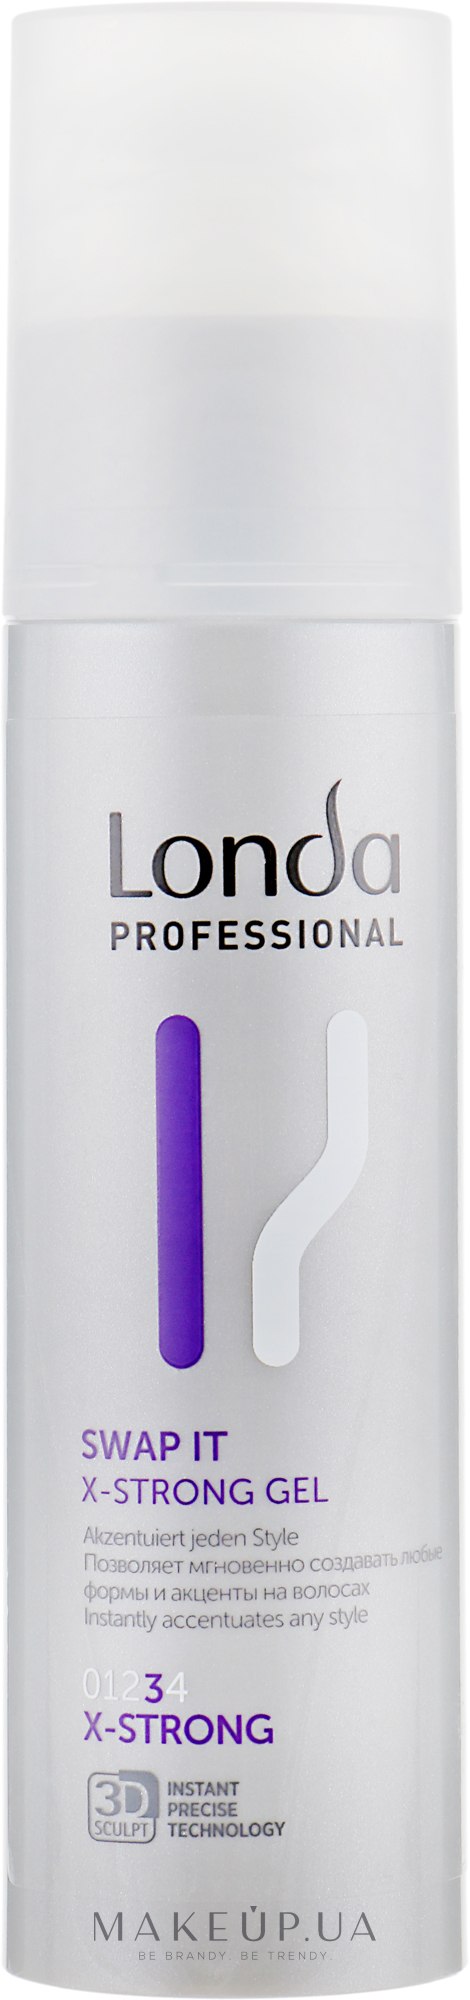 Гель екстрасильної фіксації для укладання волосся - Londa Professional SWAP IT — фото 100ml